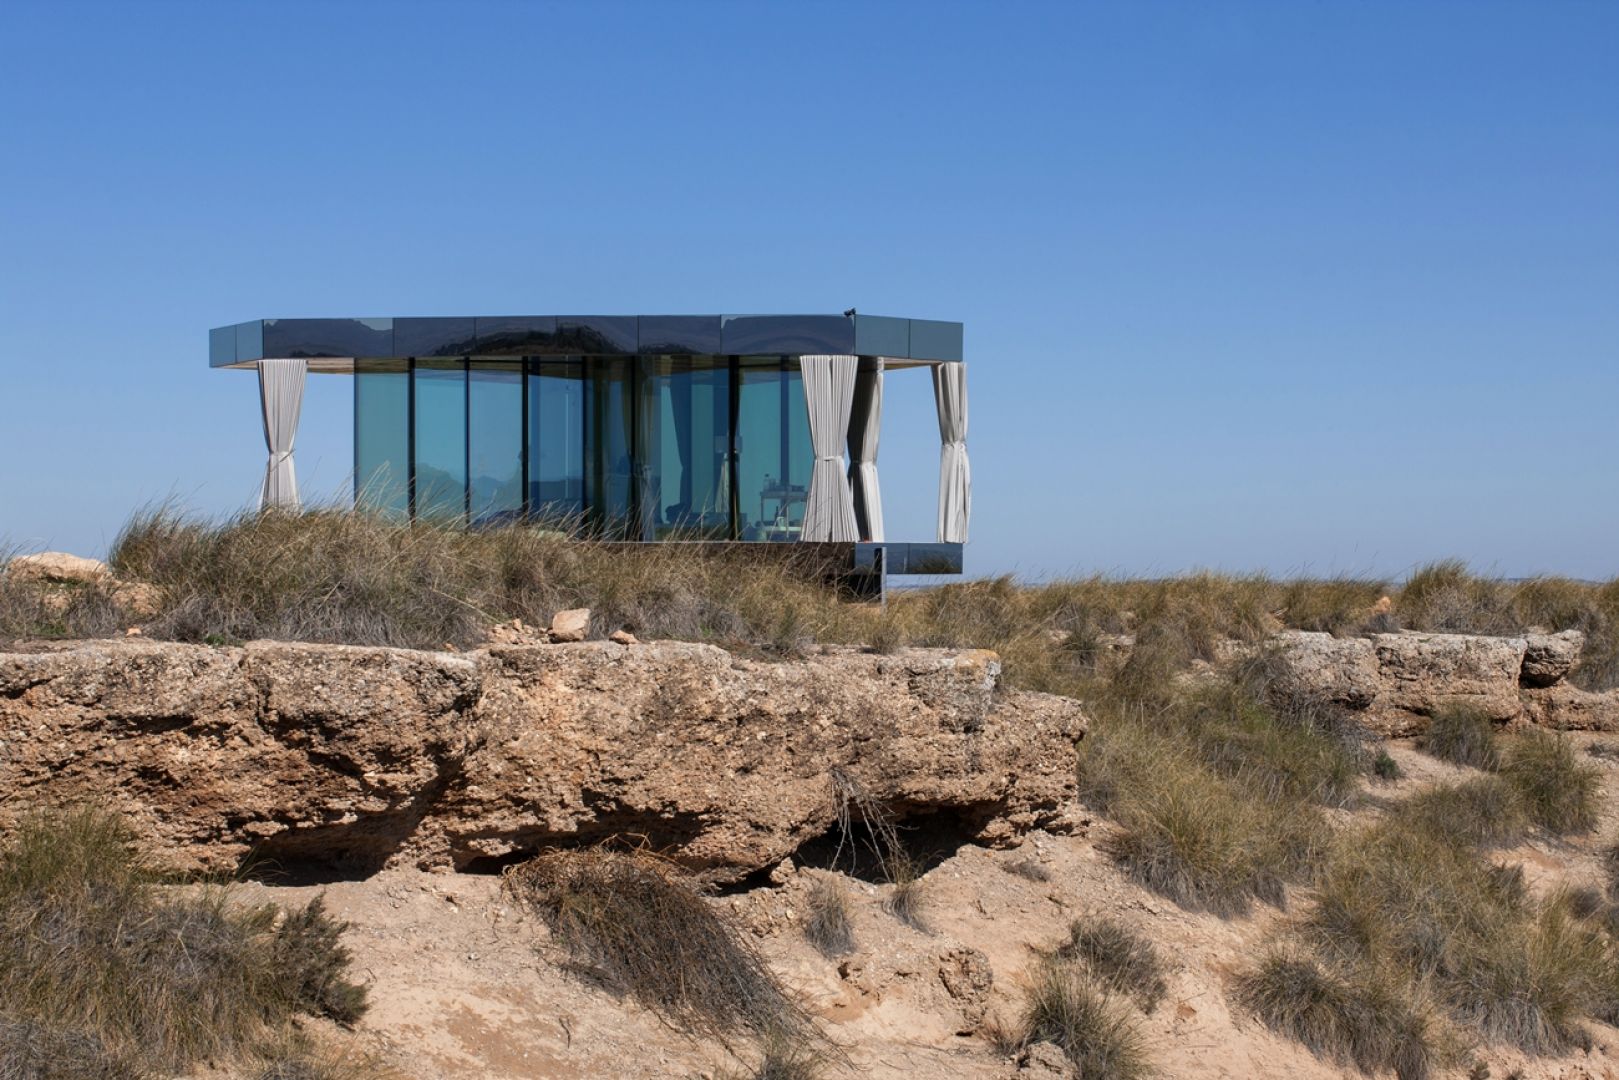 Dom La Casa del Desierto stoi na drewnianej konstrukcji i jest w pełni przeszklony energooszczędnym szkłem Guardian Glass. Fot. Guardian Glass, LLC, ©Gonzalo Botet